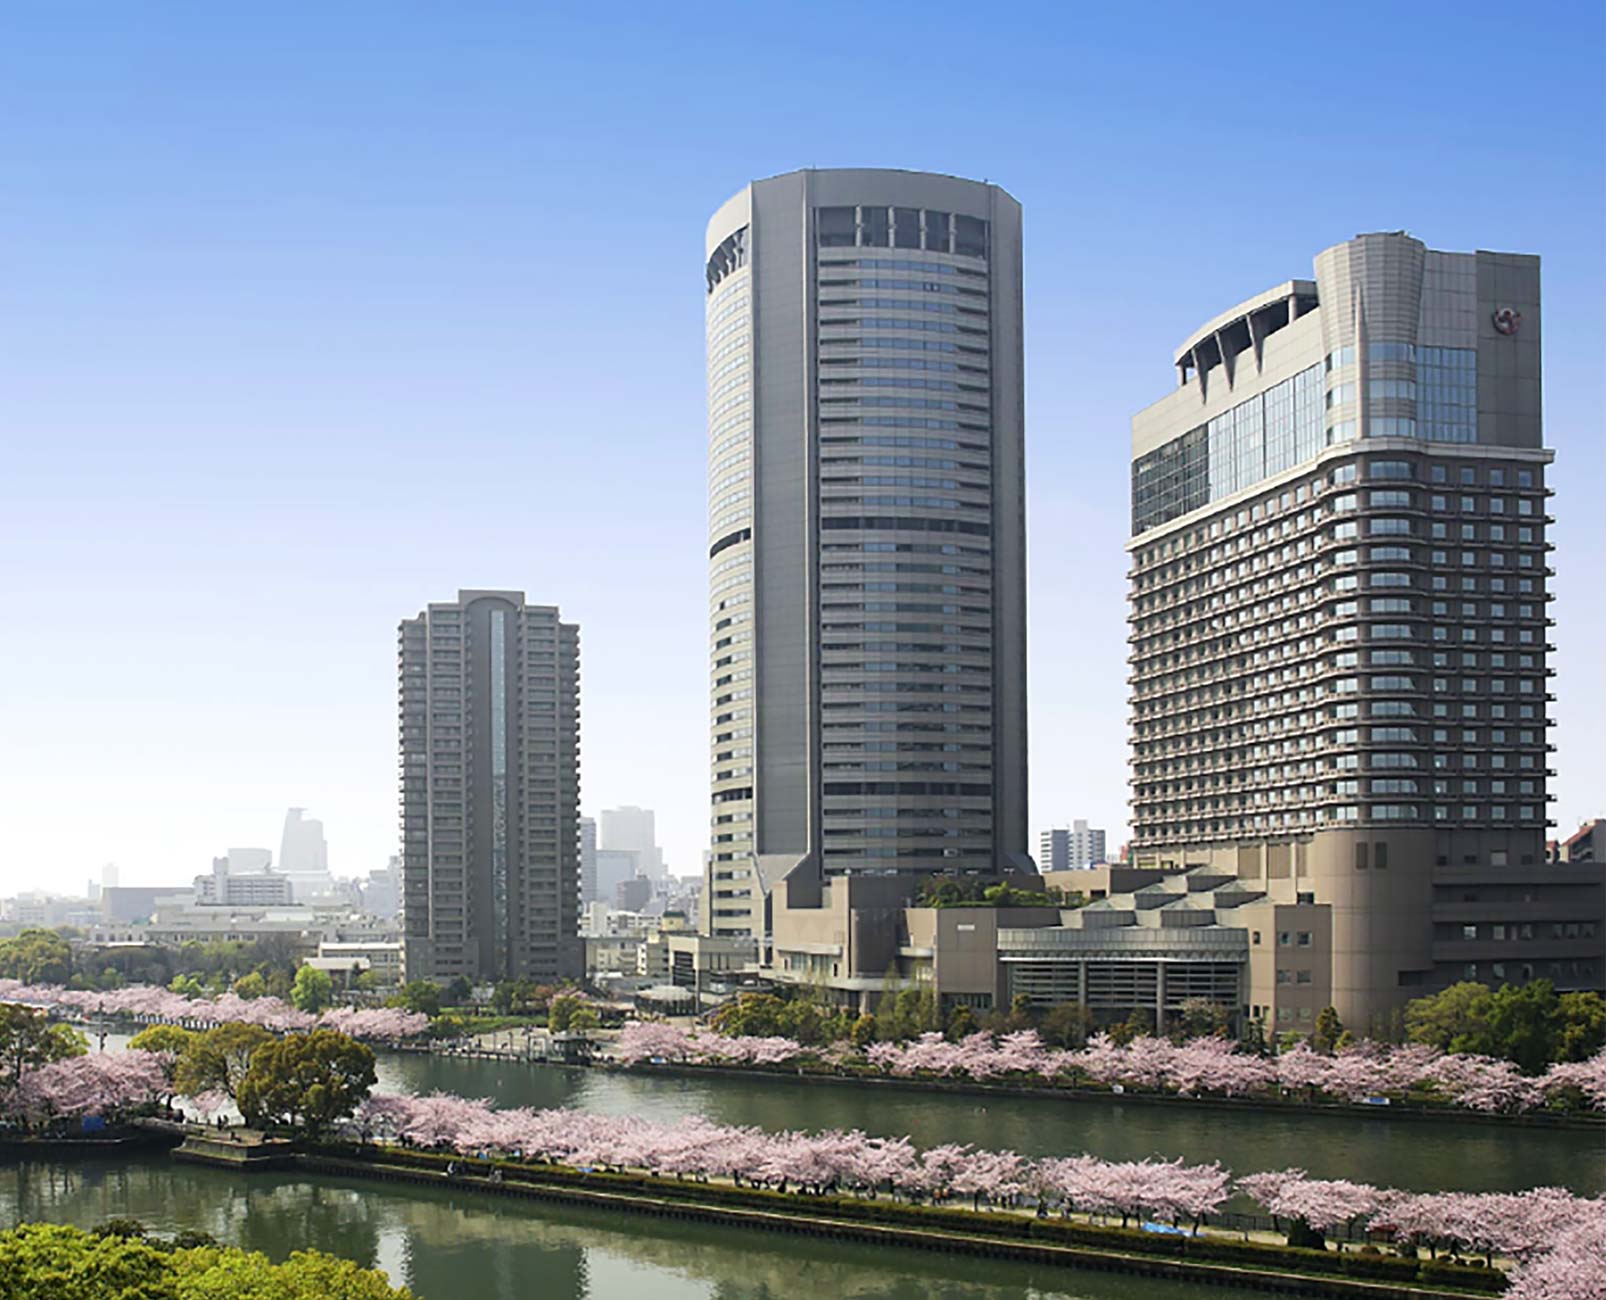 共に創る豊かな未来 国分西日本